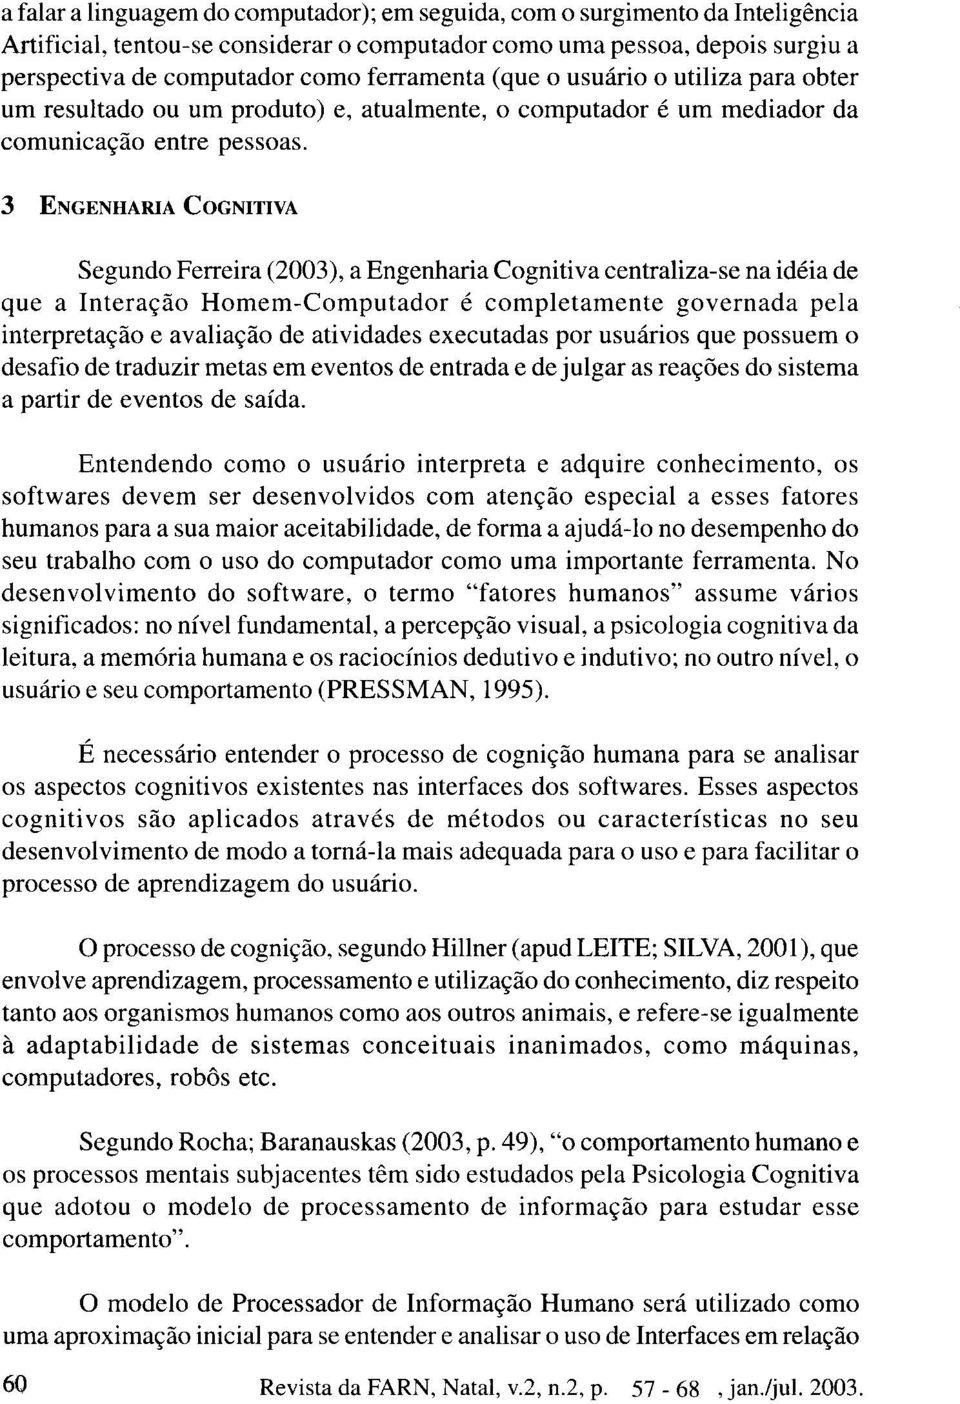 3 ENGENHARIA COGNITIVA Segundo Ferreira (2003), a Engenharia Cognitiva centraliza-se na idéia de que a Interação Homem-Computador é completamente governada pela interpretação e avaliação de